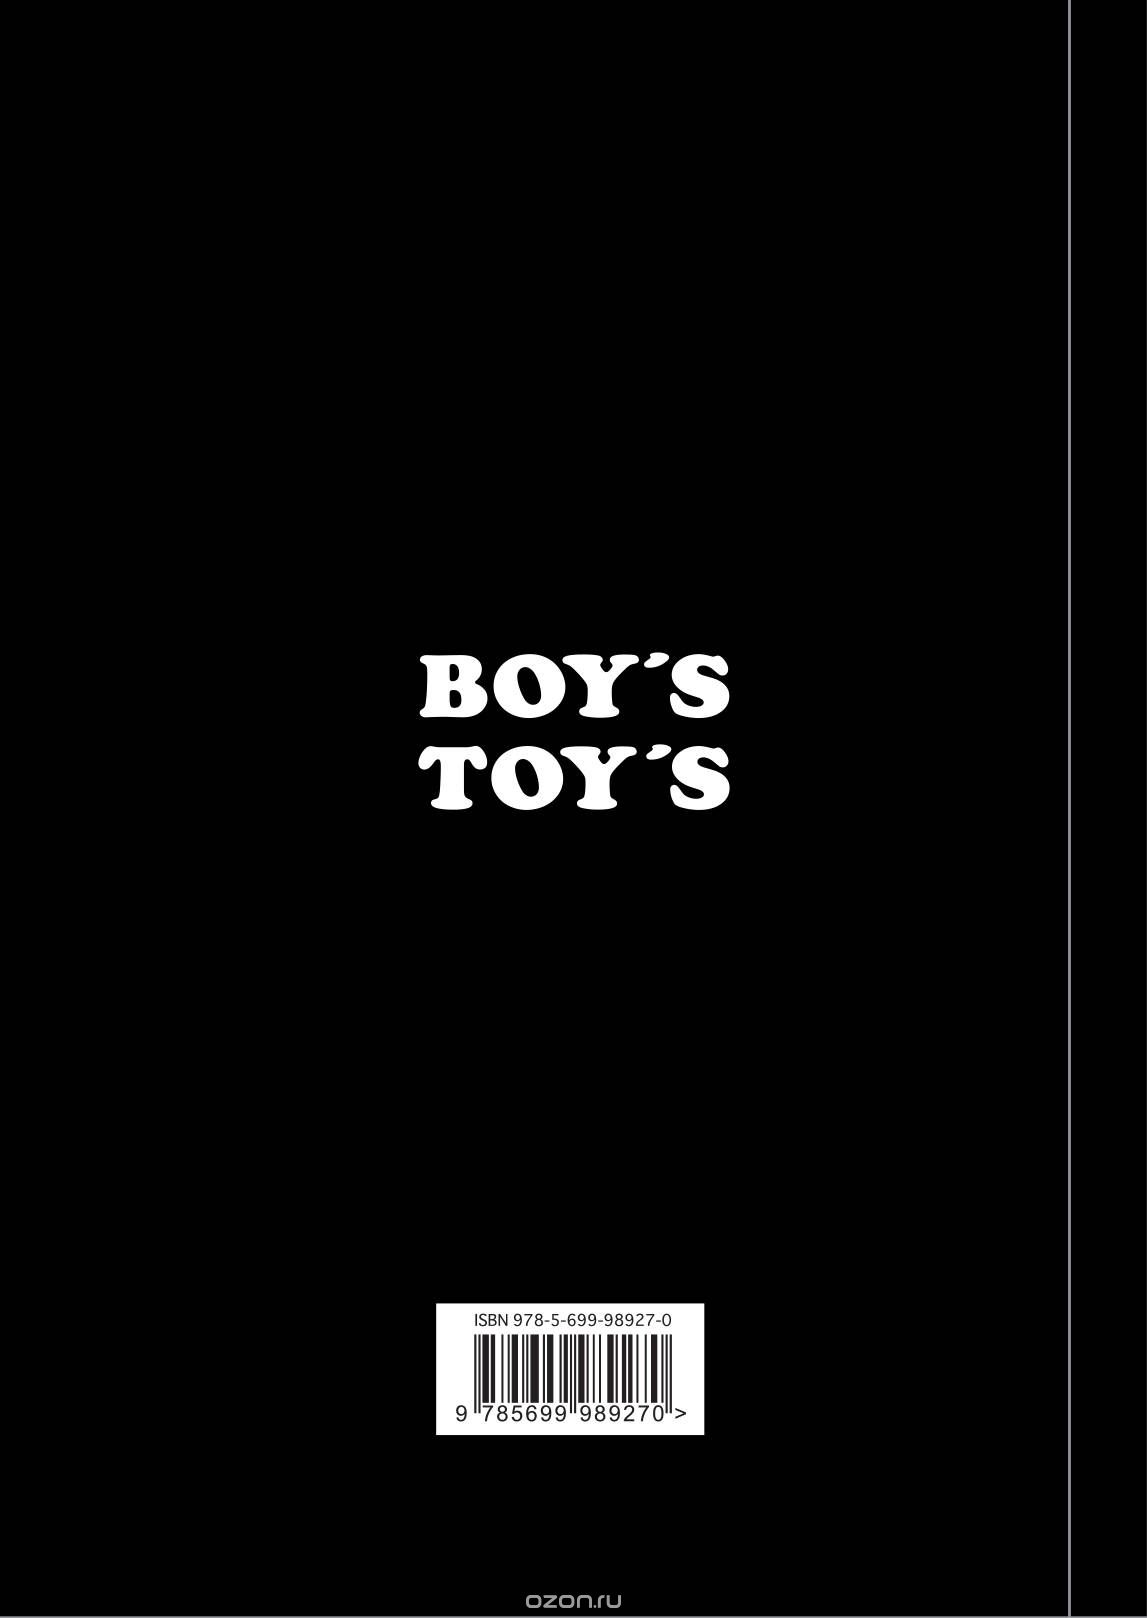 Boy's Toys (Camel Note)